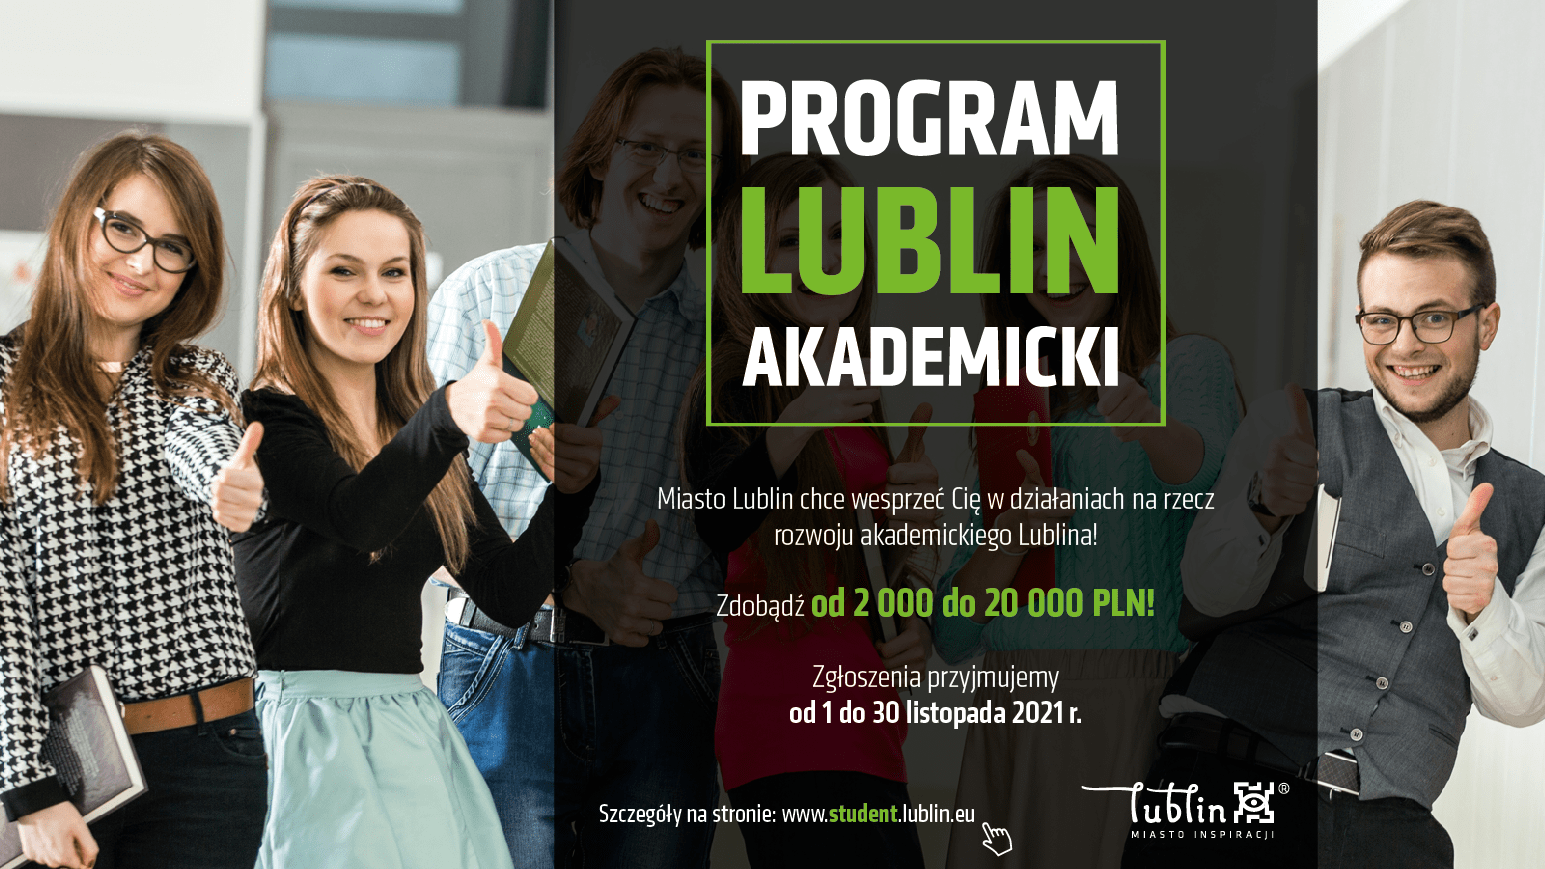 Lublin: Miasto chce wspierać i promować studentów i akademickość. Do wygrania pieniądze  - Zdjęcie główne